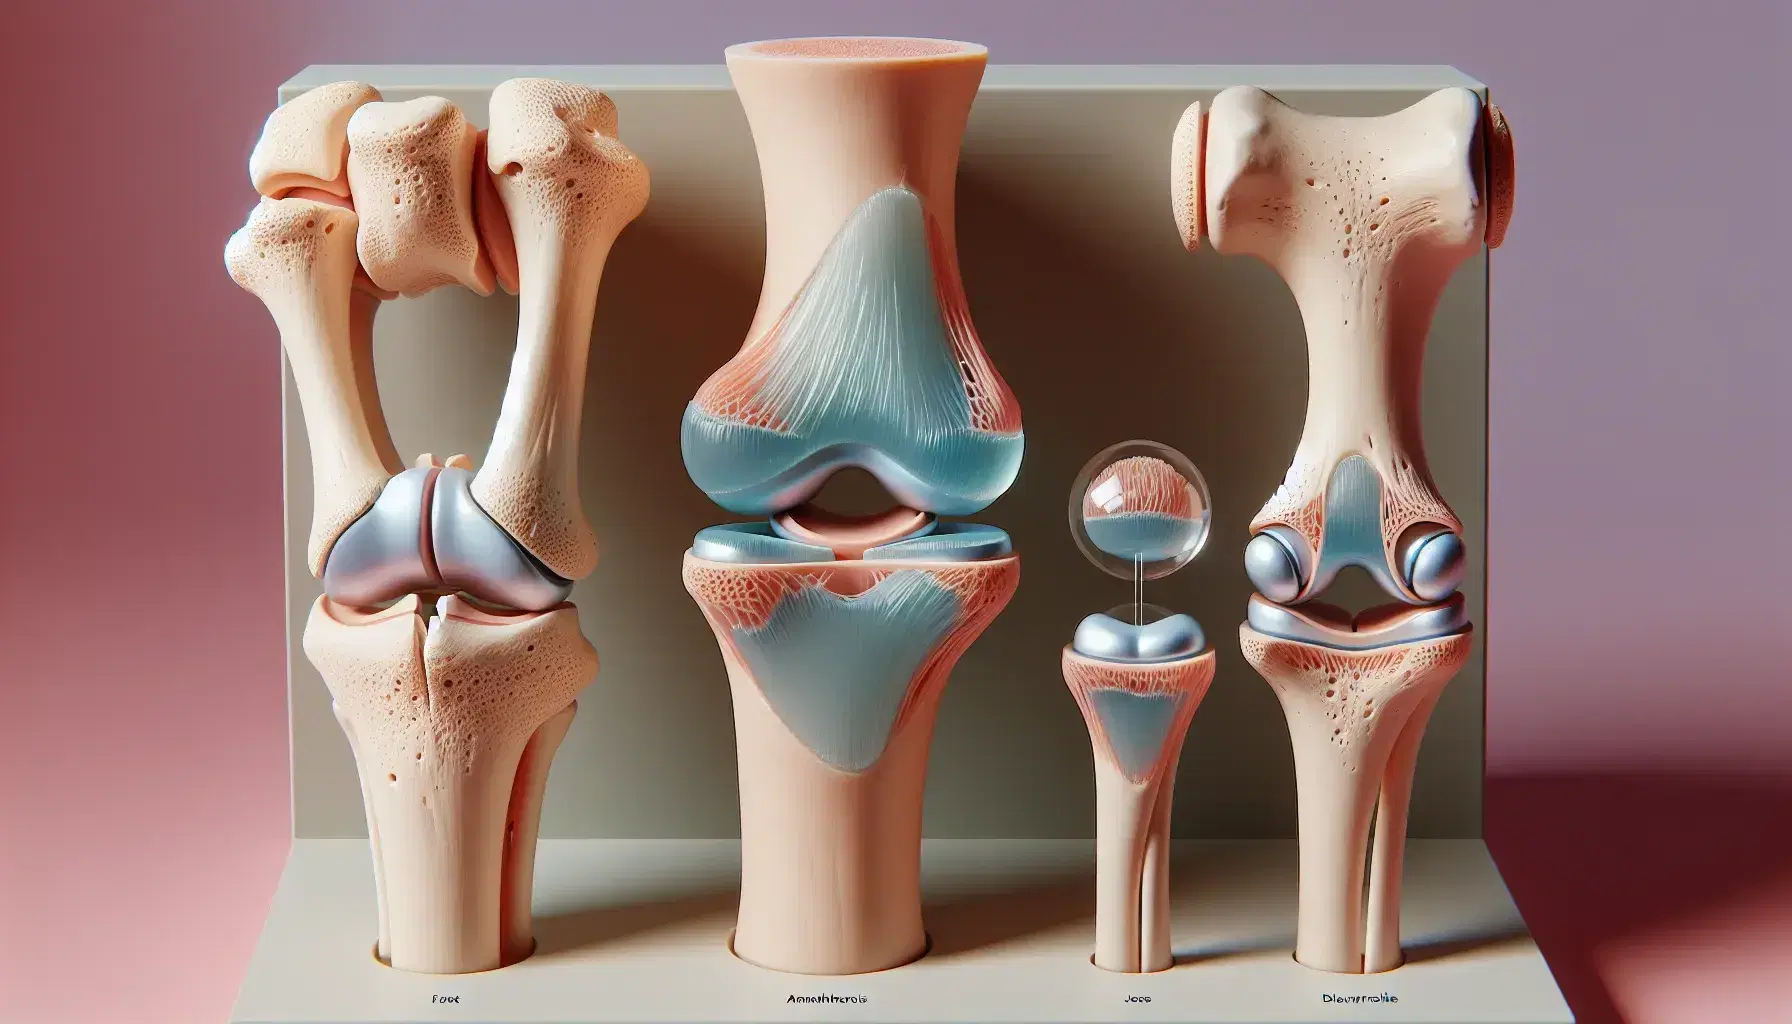 Modelos anatómicos de articulaciones humanas mostrando sinartrosis fija a la izquierda, anfiartrosis semi-móvil al centro y diartrosis móvil a la derecha en superficie neutra.